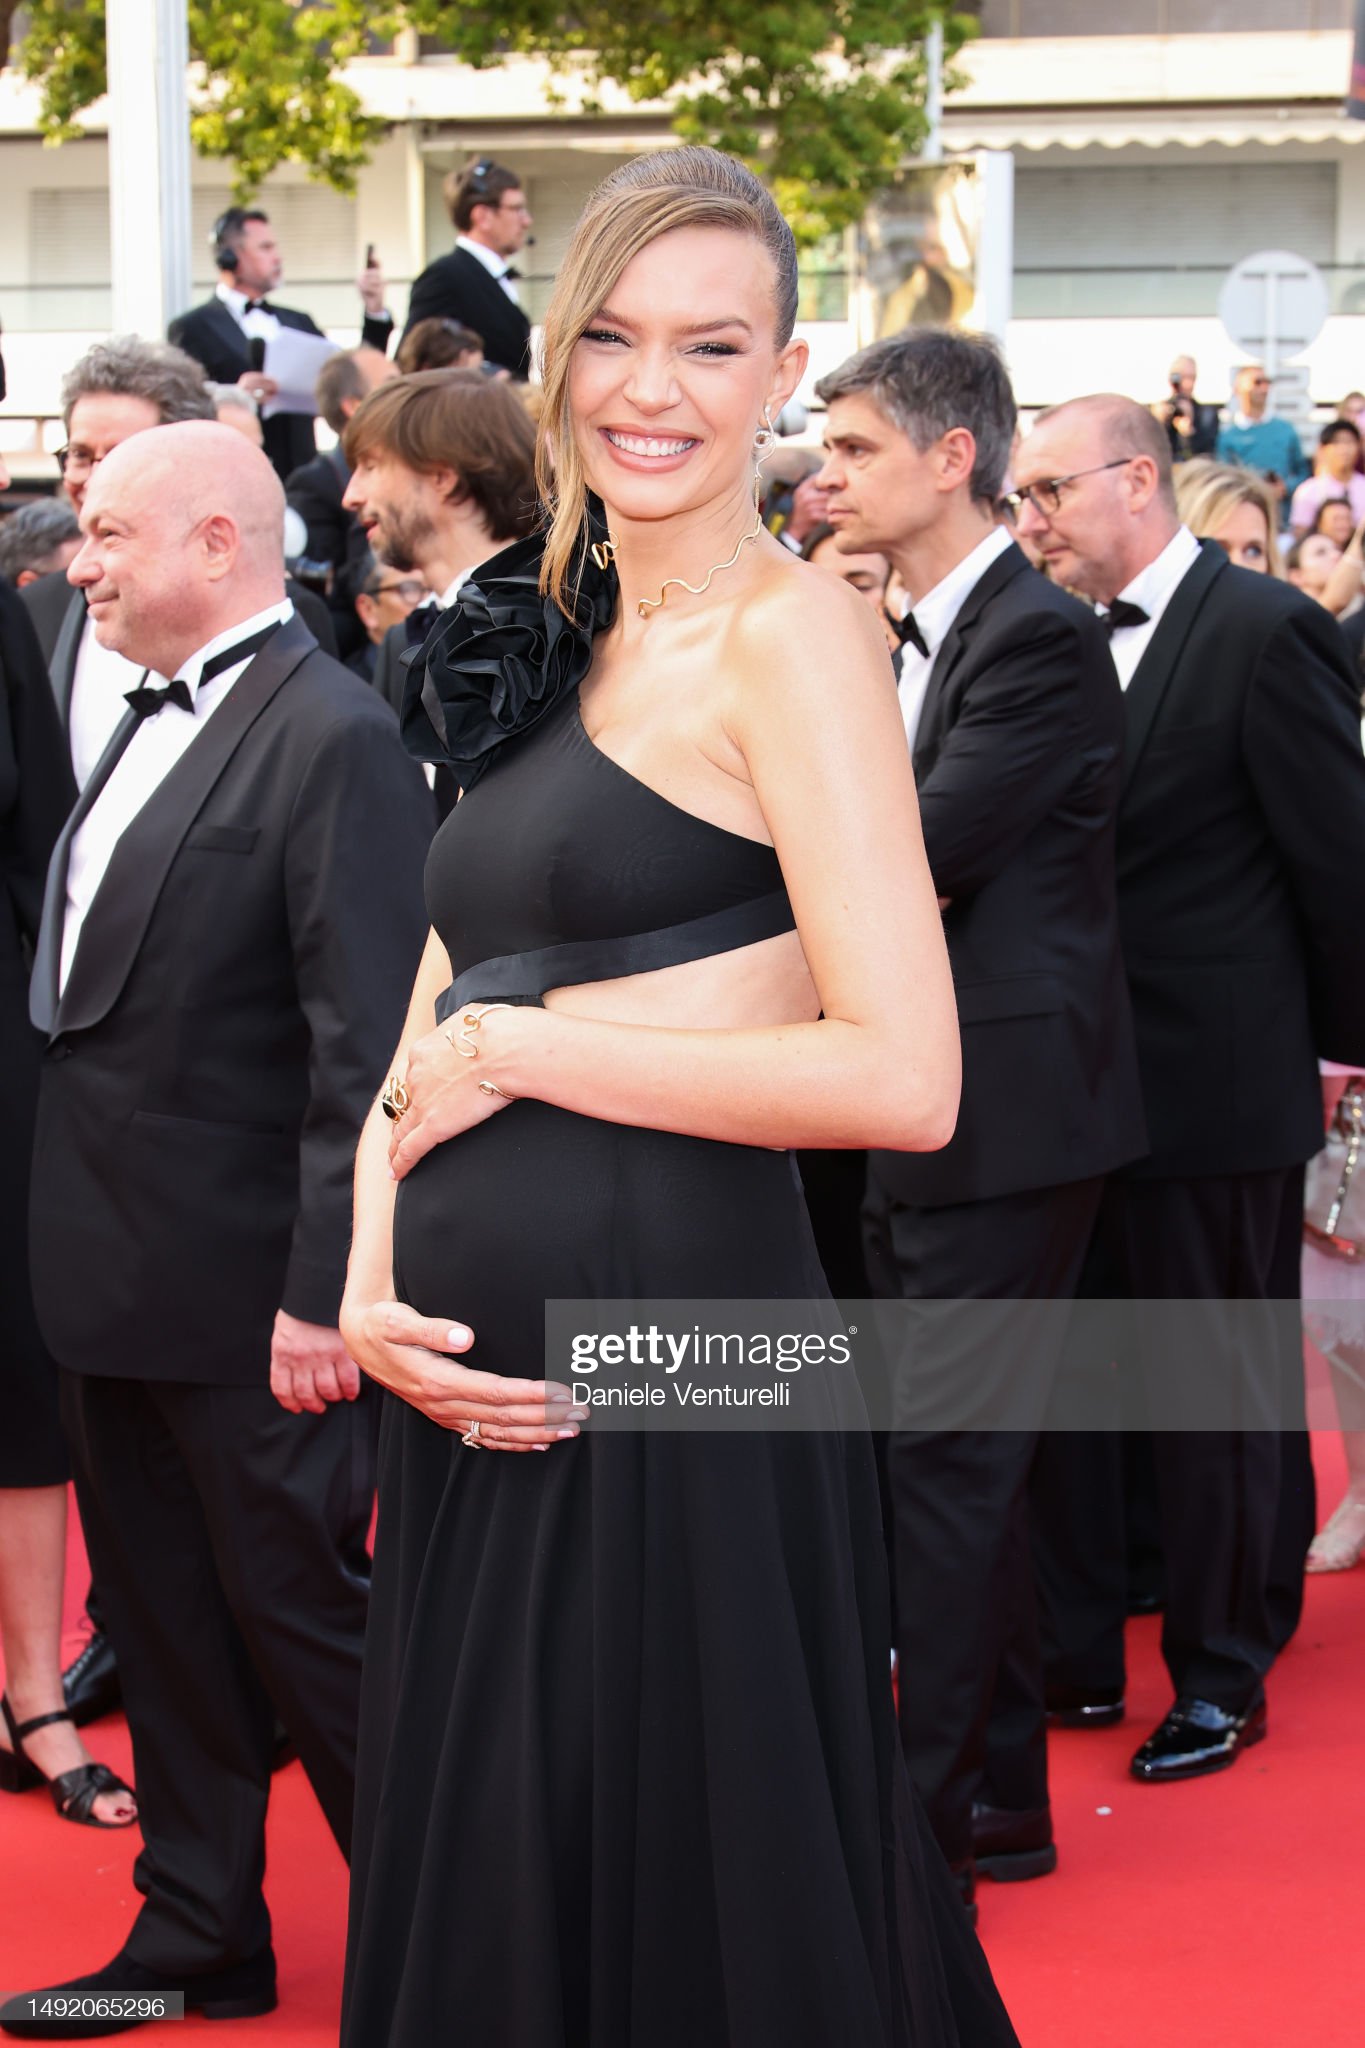 Thảm đỏ Cannes 2023 ngày 6: Jennifer Lawrence - Gigi Hadid đẹp choáng ngợp, Irina Shayk hở bạo lấn át dàn sao - Ảnh 11.